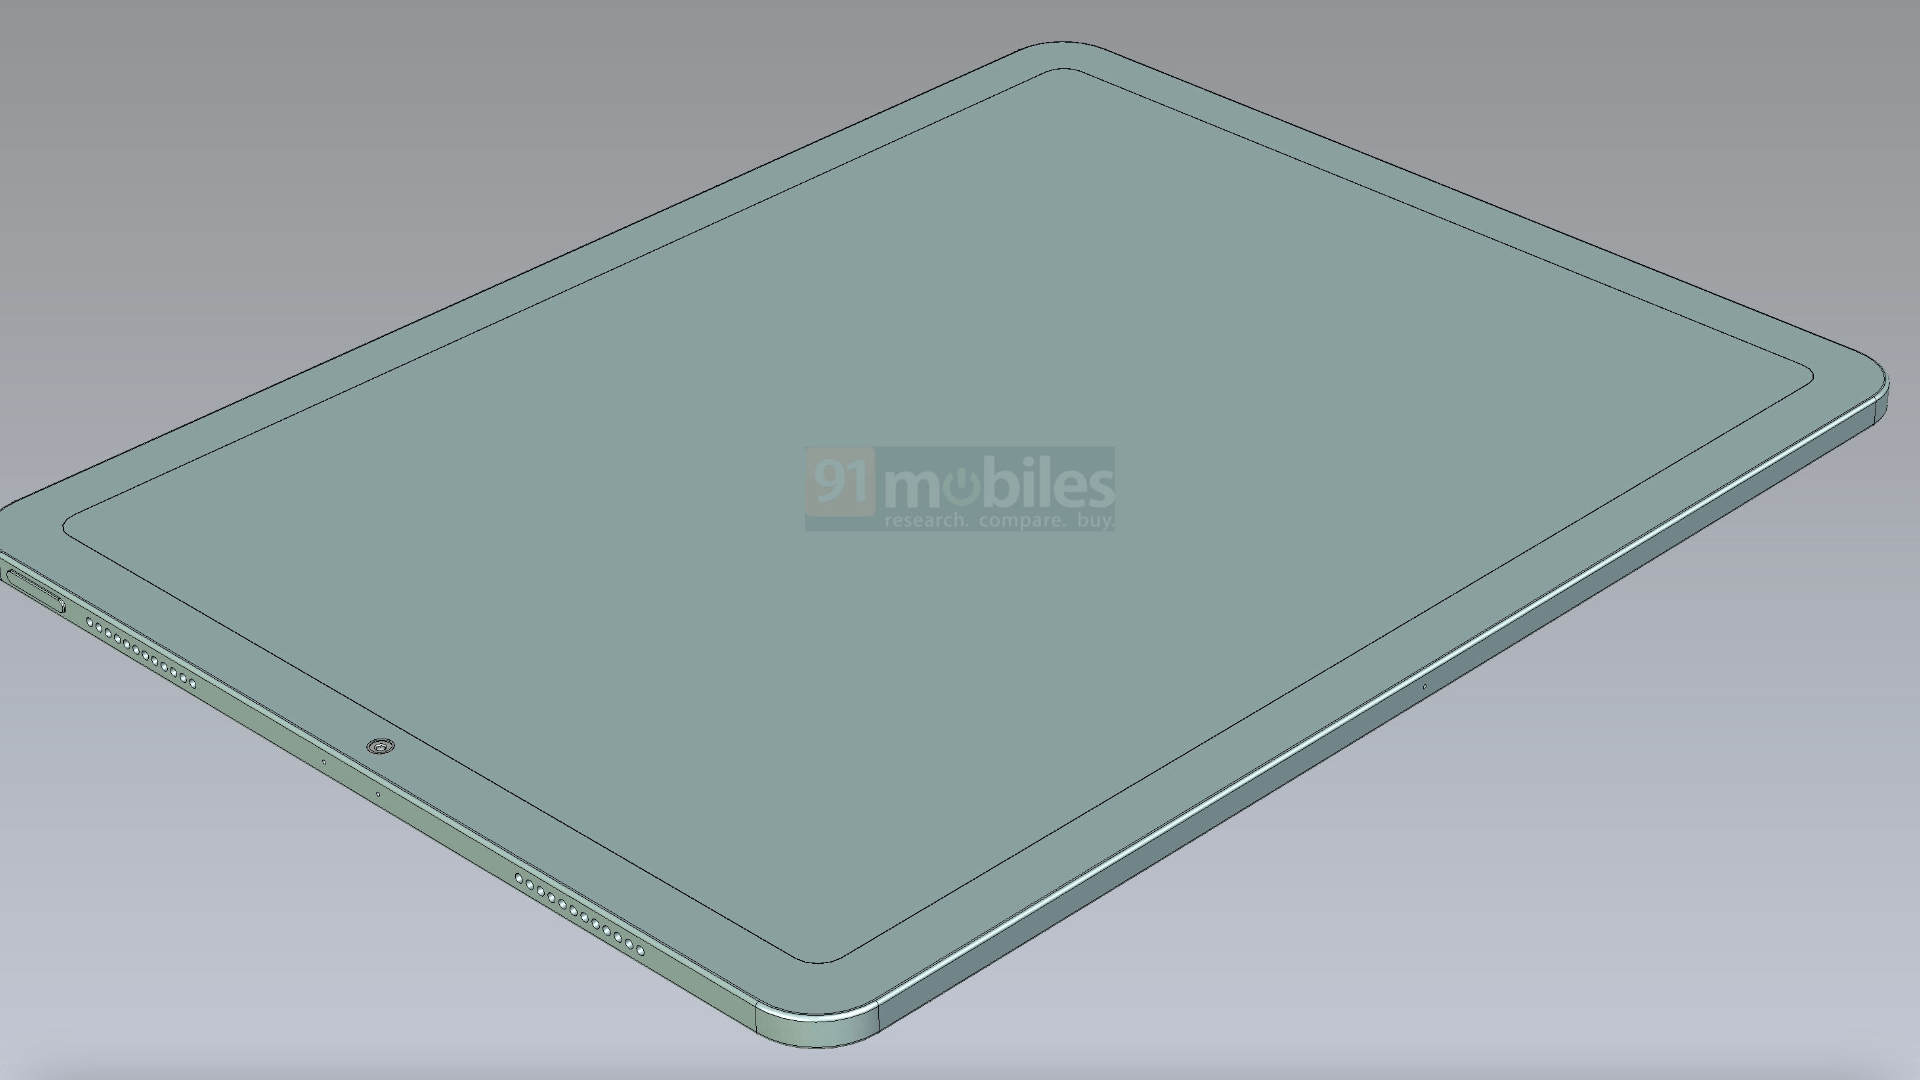 새로운 12.9인치 디스플레이 크기를 보여주는 iPad Pro용 CAD 설계도